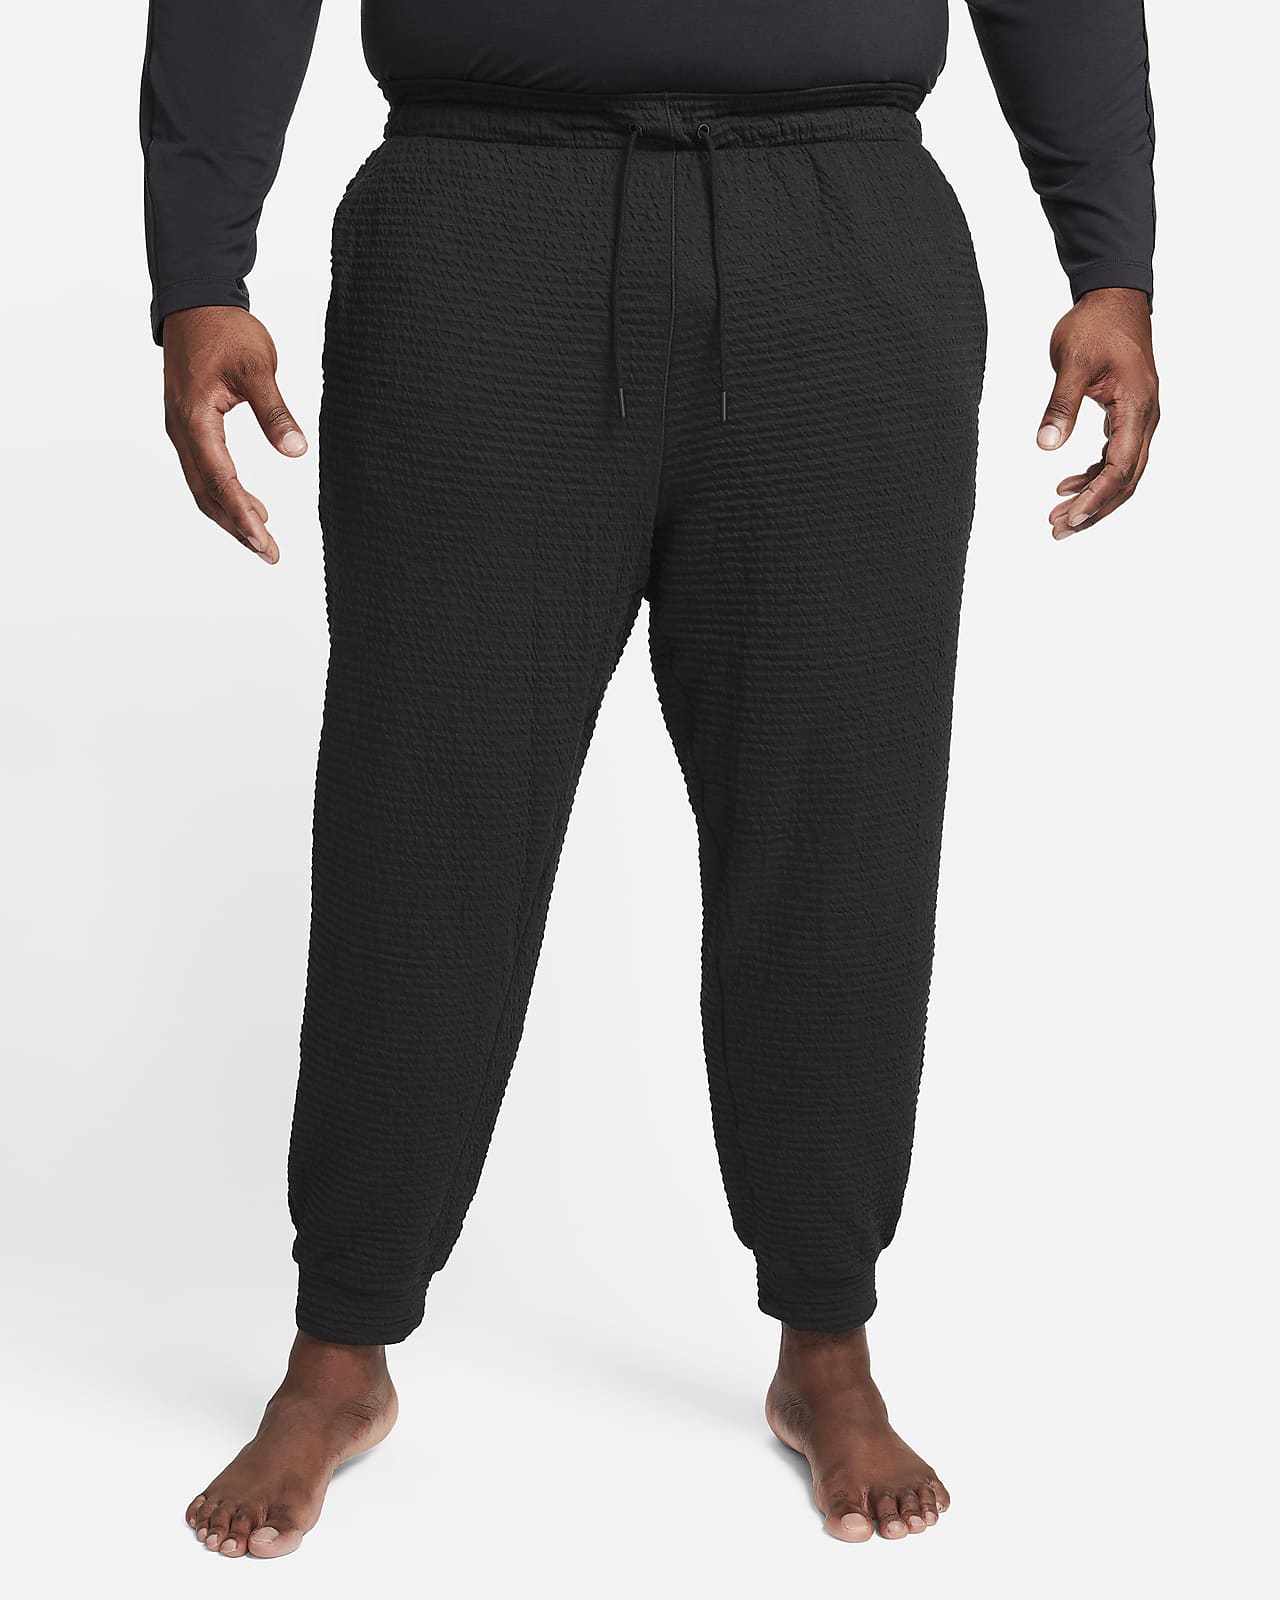 Nike Dri-FIT Men's Yoga Pants Size XL Tall (Green/Heather) AT5696